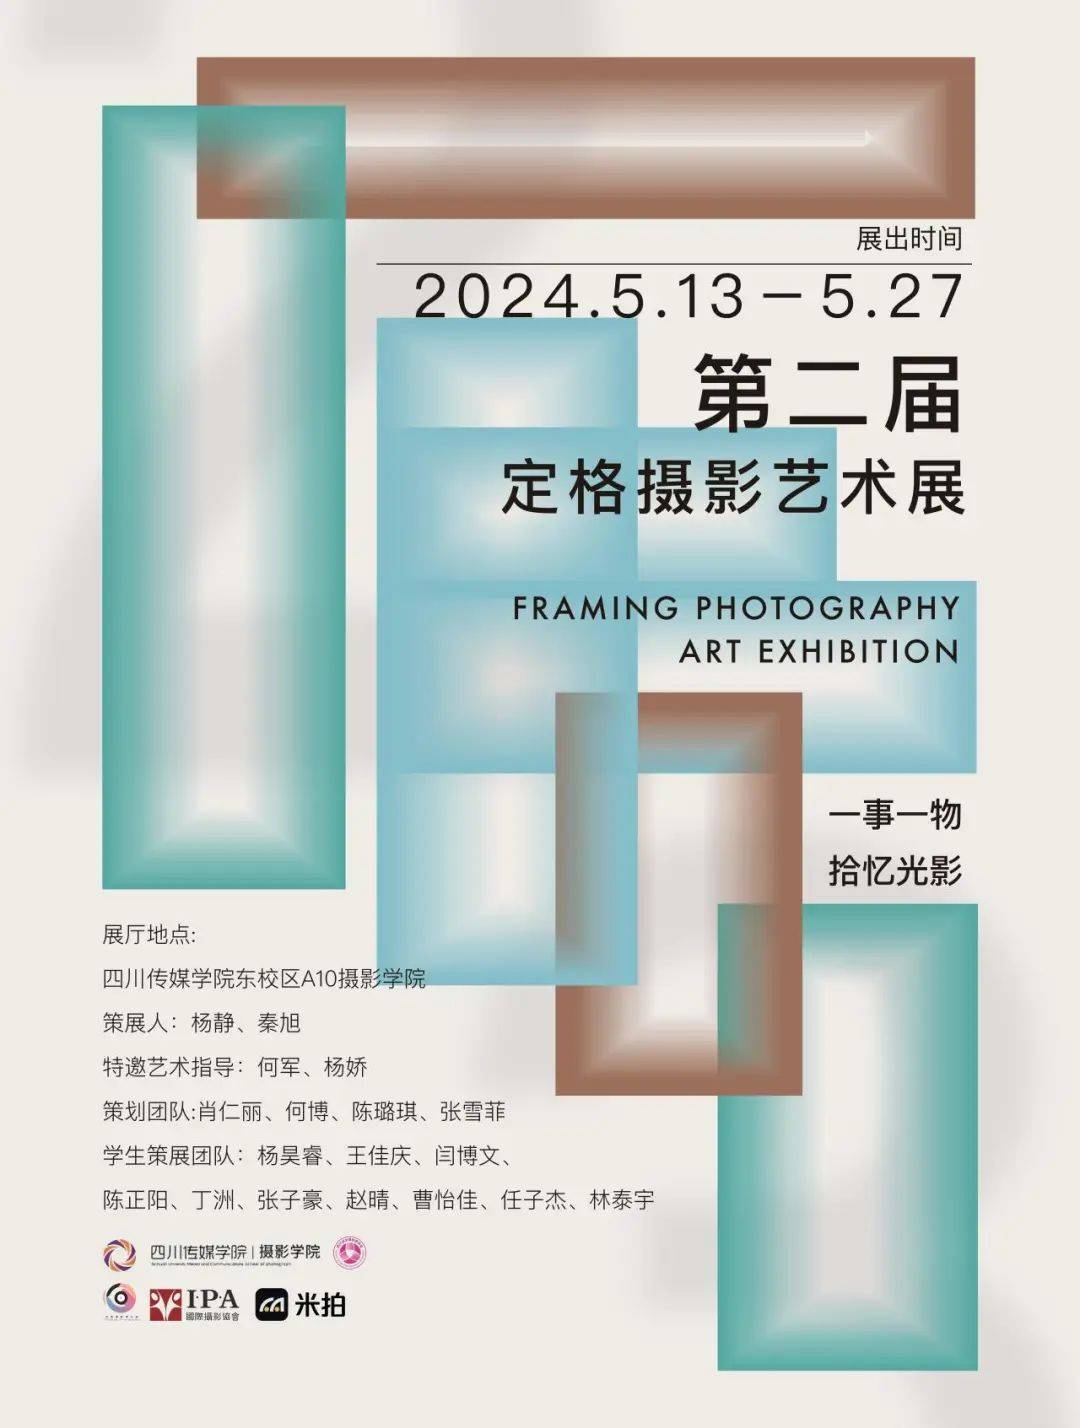 四川传媒学院第二届定格摄影艺术展览开幕!